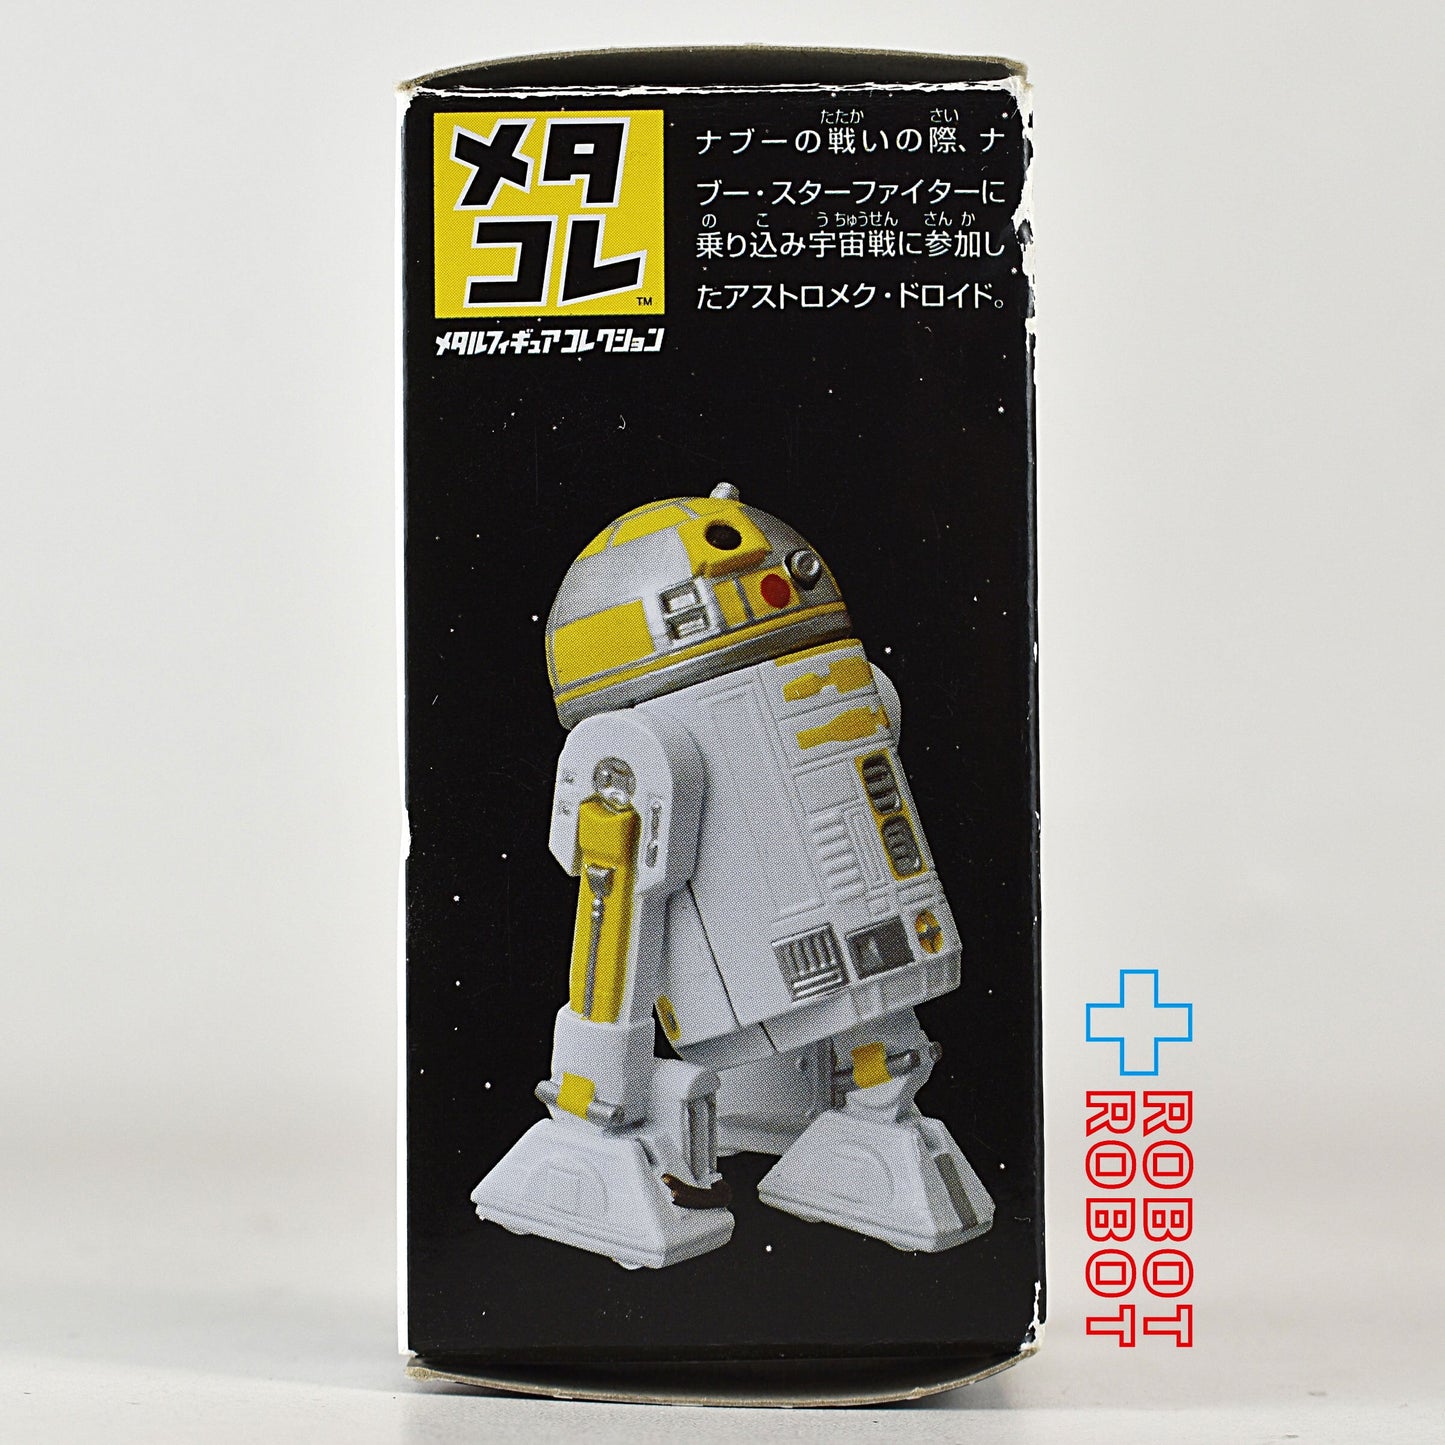 タカラトミー スター・ウォーズ メタコレ R2-C4 メタルフィギュア 開封箱付